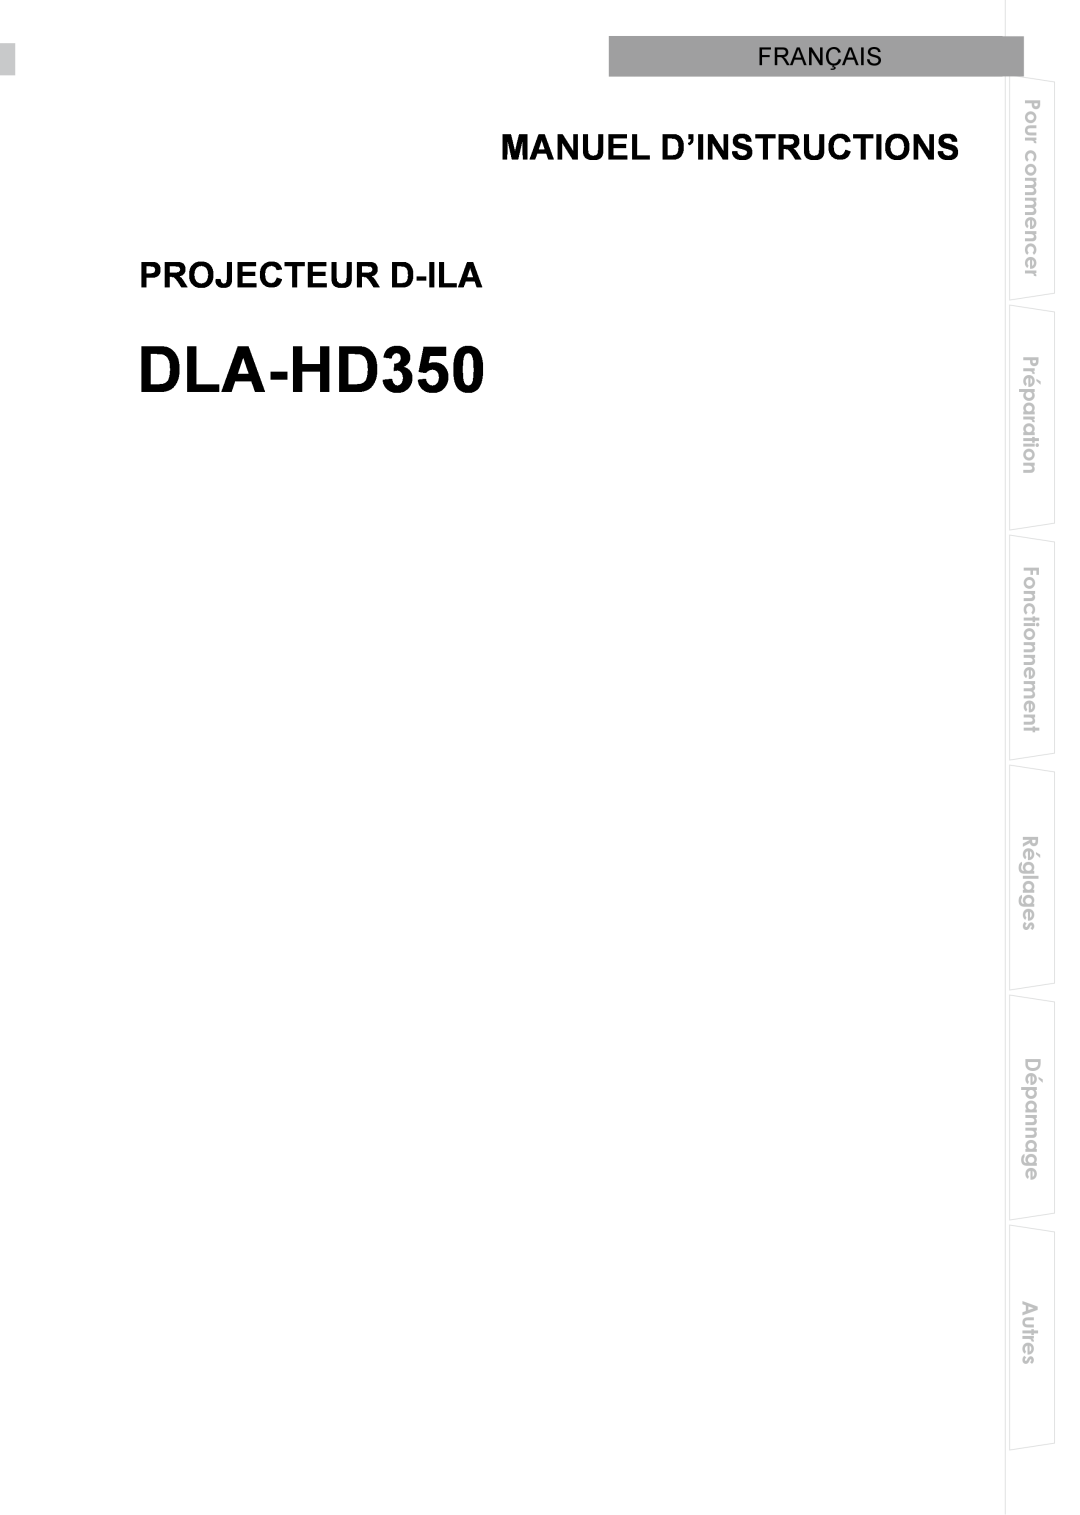 JVC DLA-HD350 manual Manuel D’Instructions Projecteur D-Ila, Français 